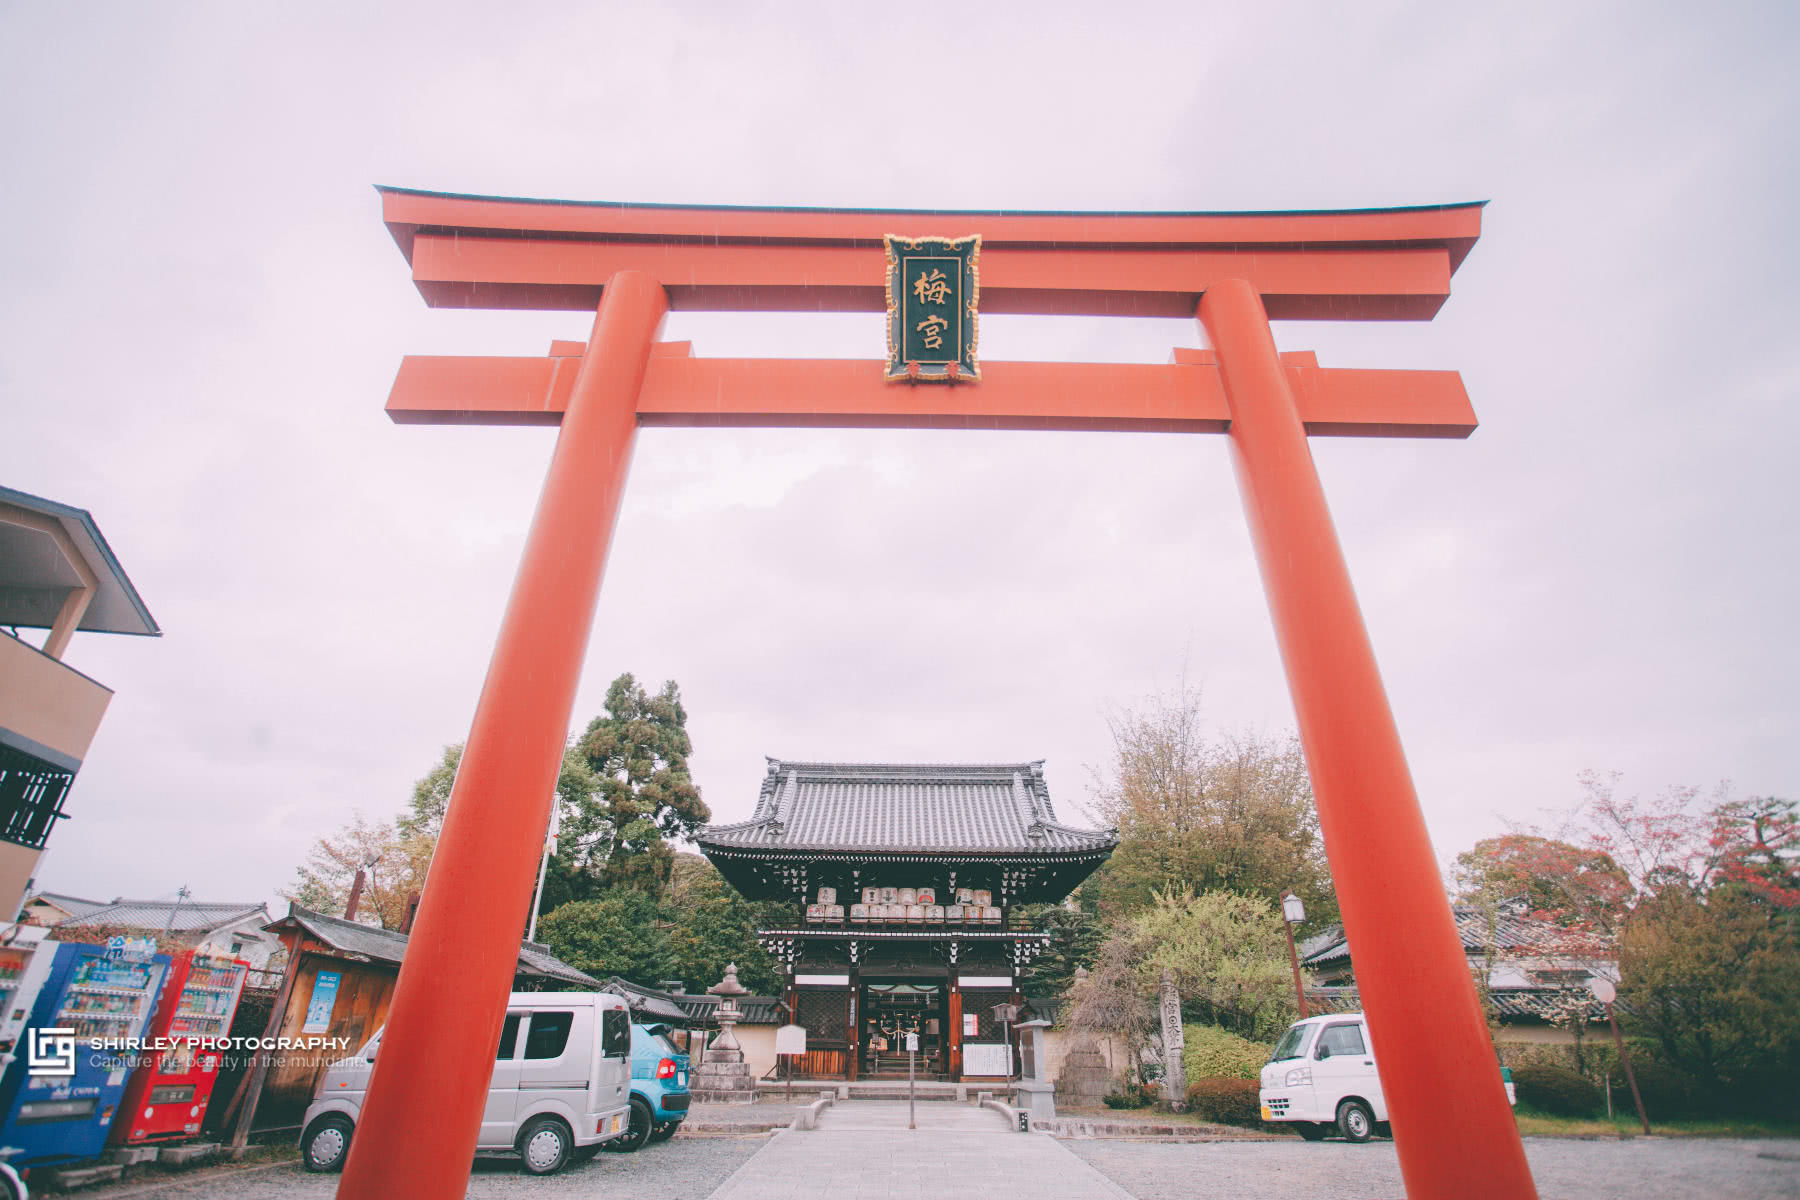 深度游 继猫站长猫掌柜之后 京都这个神社也被猫咪 霸占 了